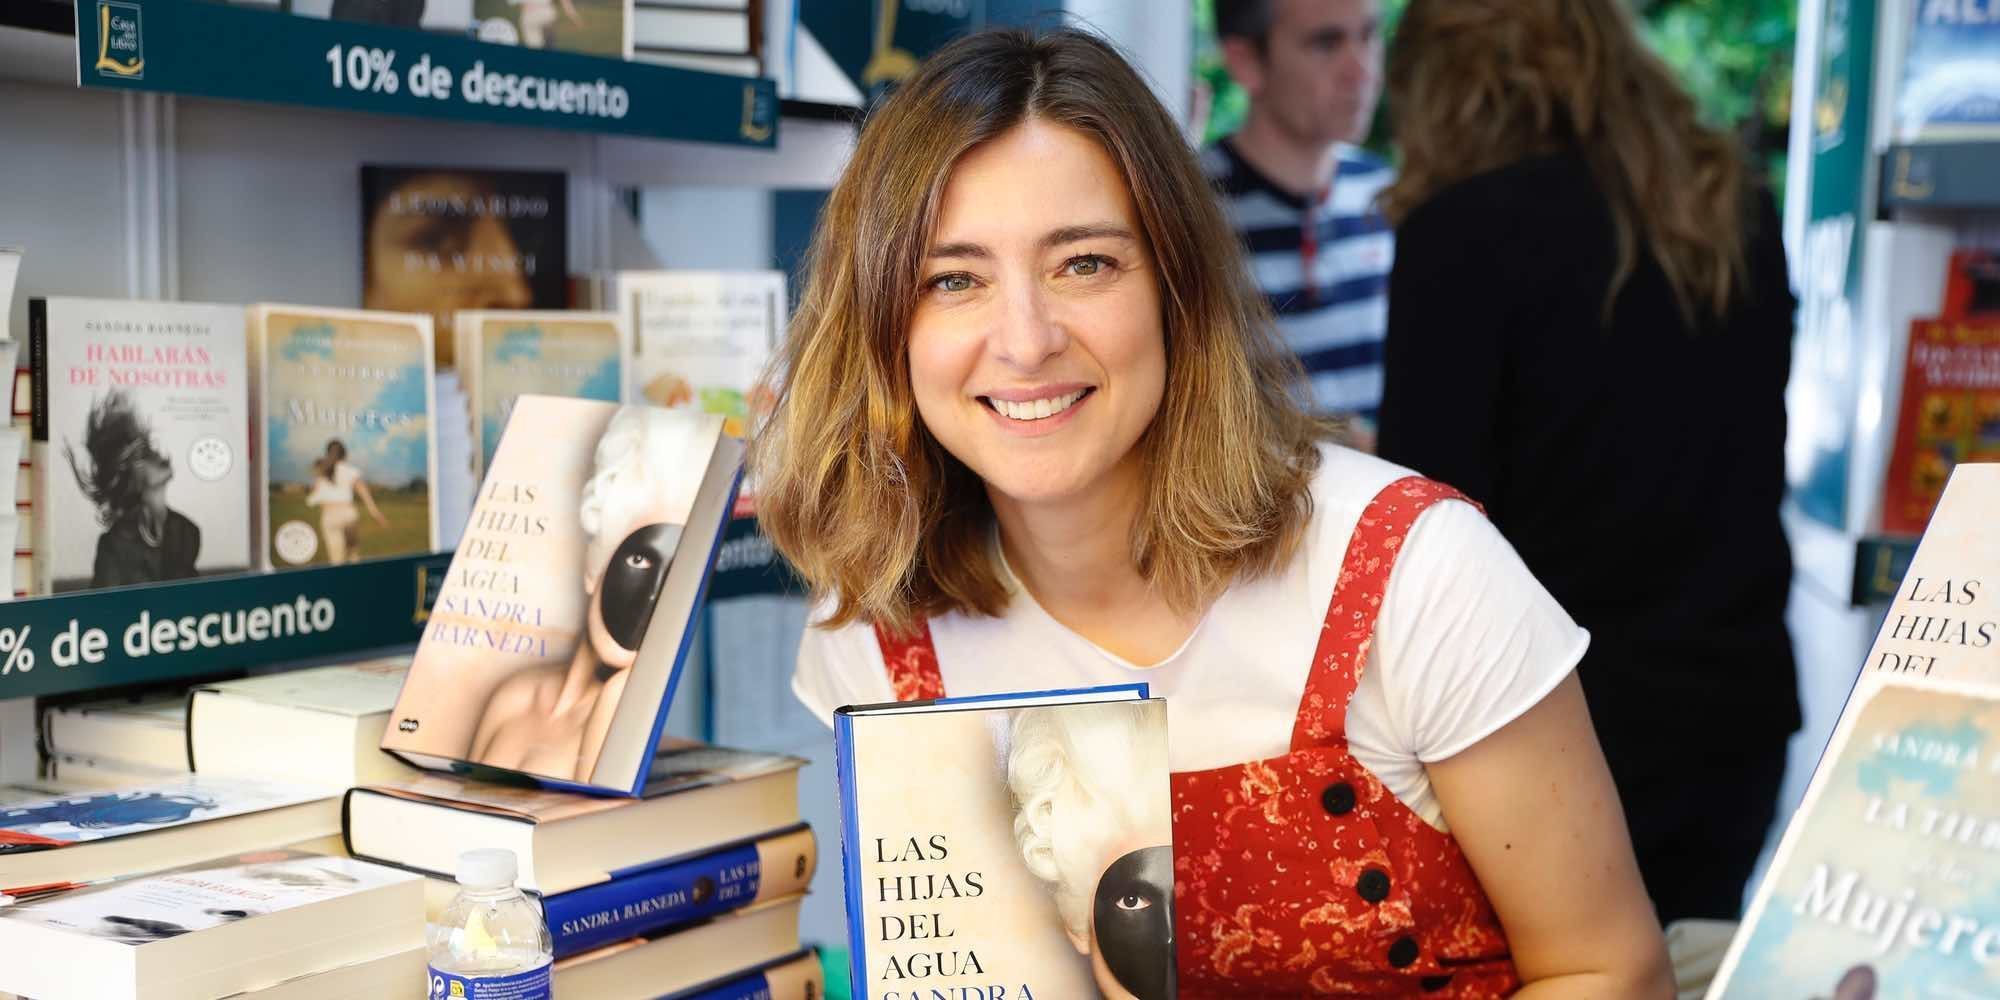 La visita sorpresa de Nagore Robles a Sandra Barneda en la Feria del Libro 2018